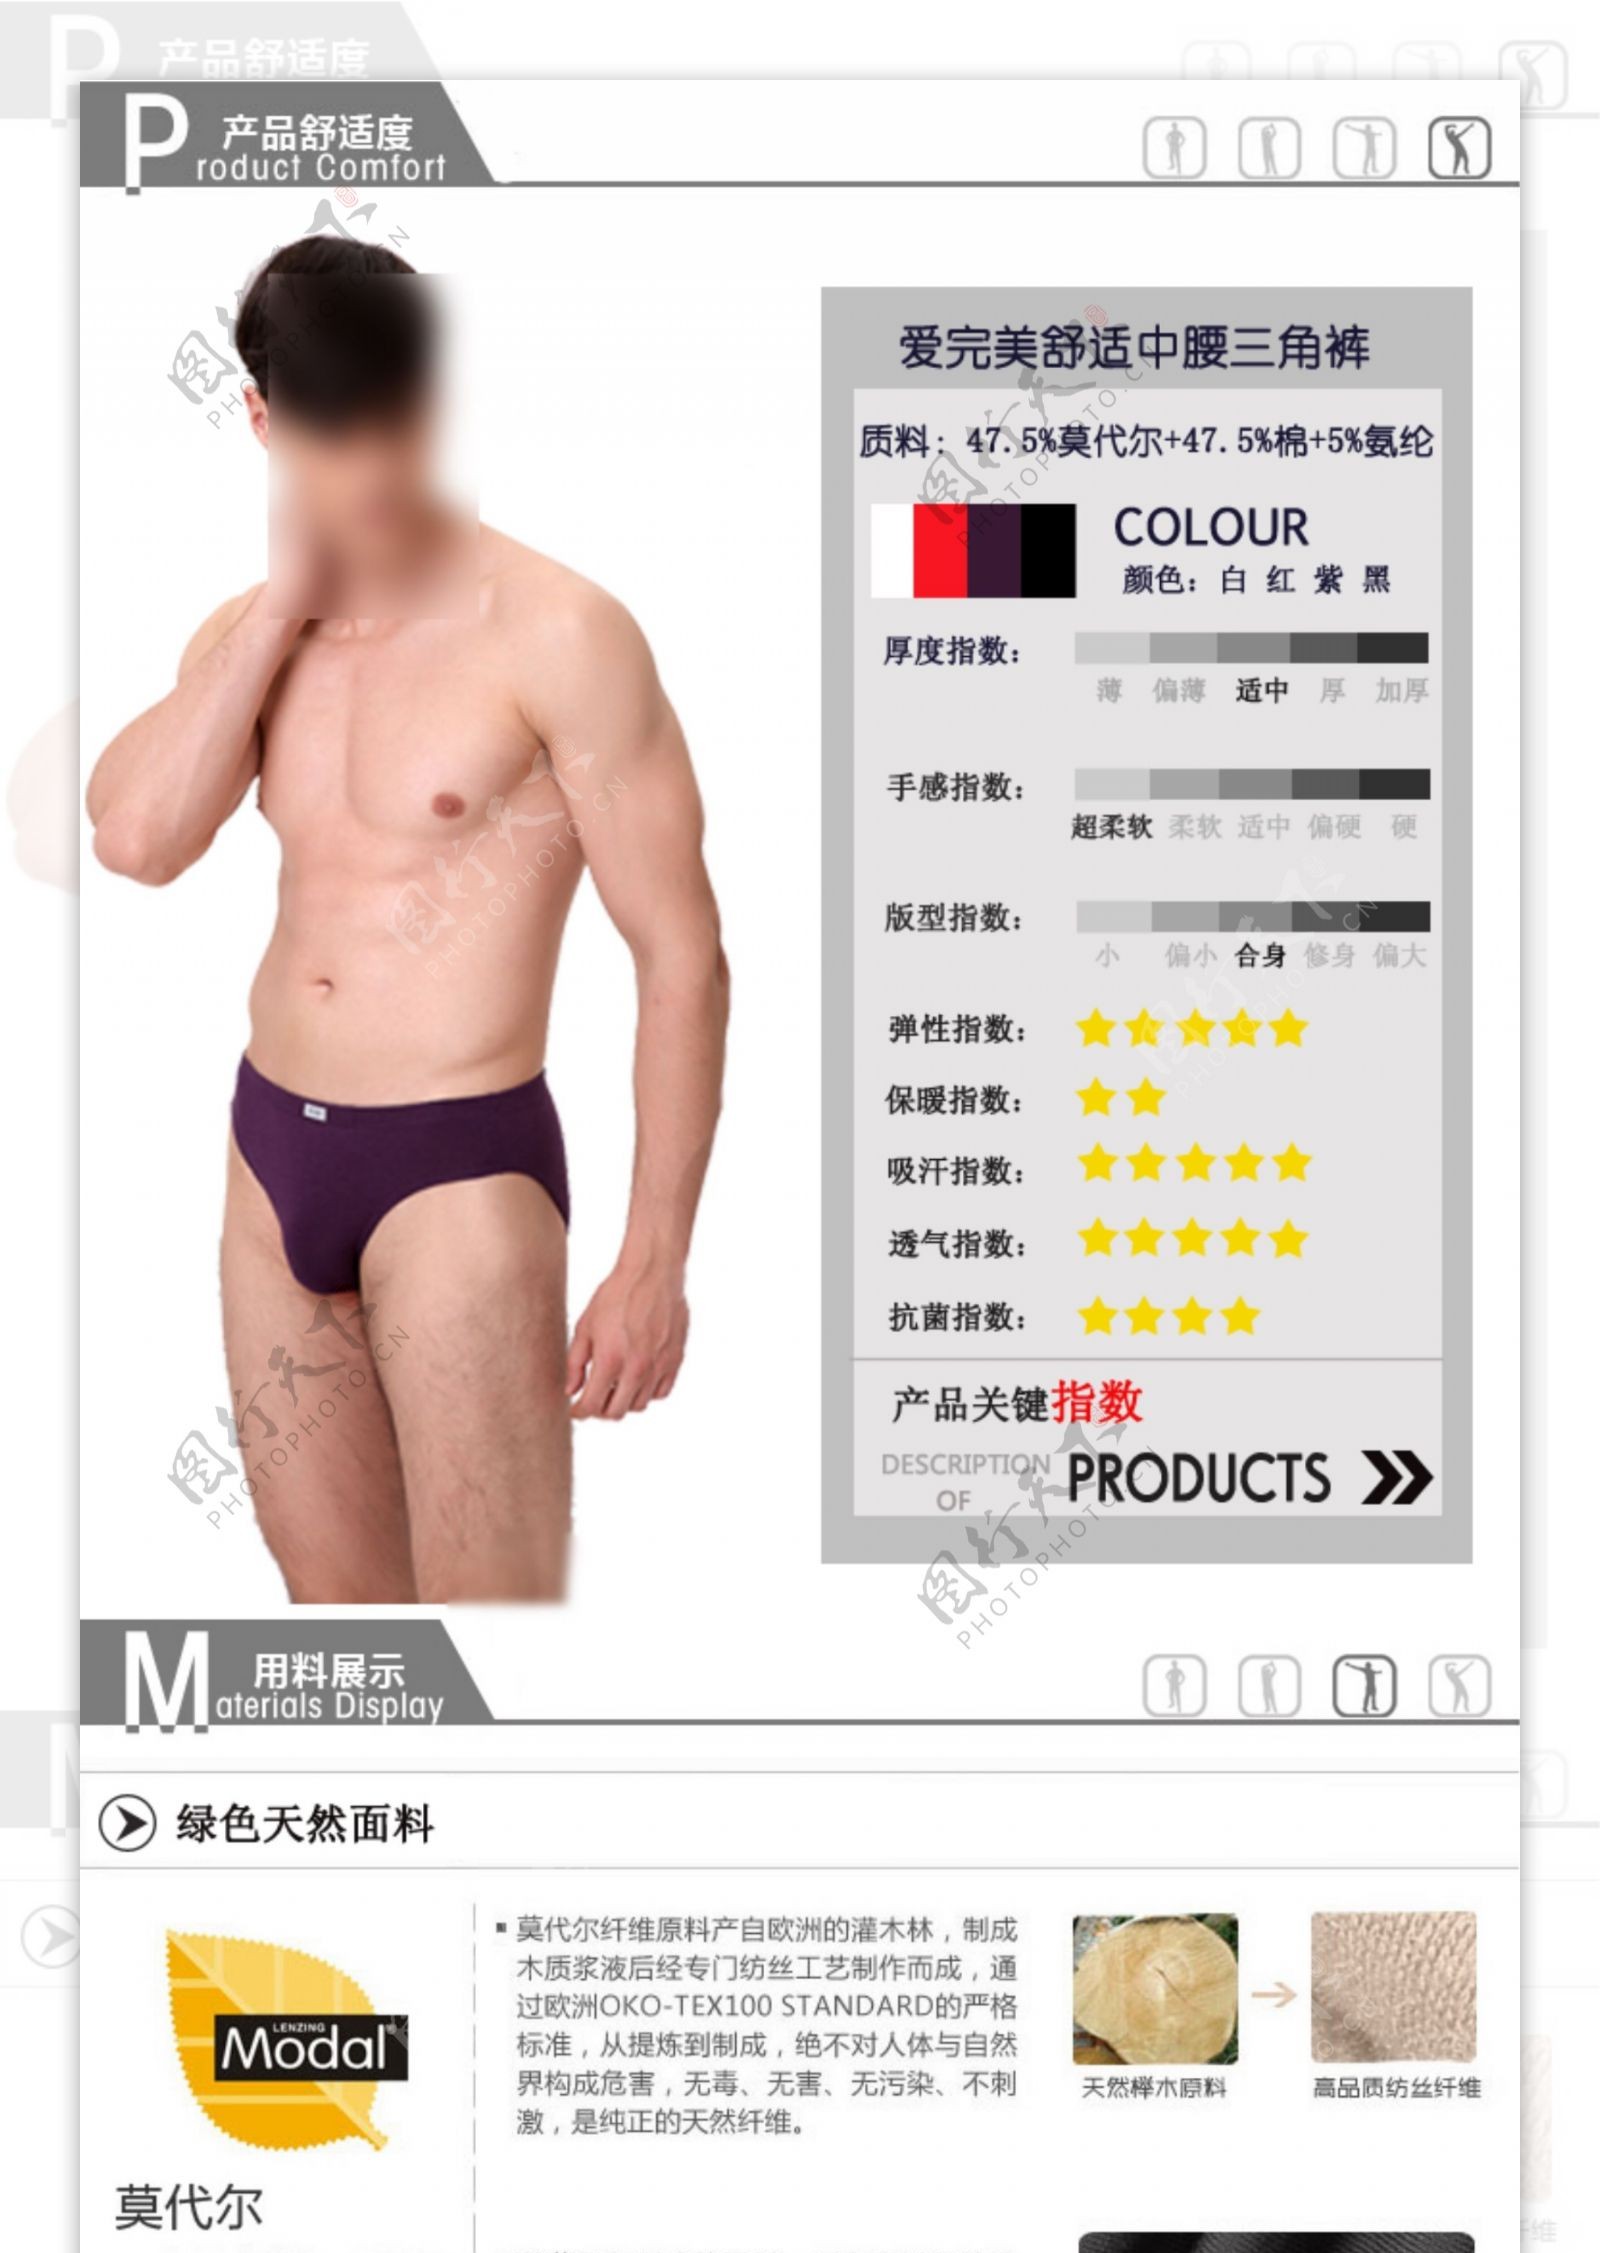 淘宝详情页产品细节特性男装内衣描述